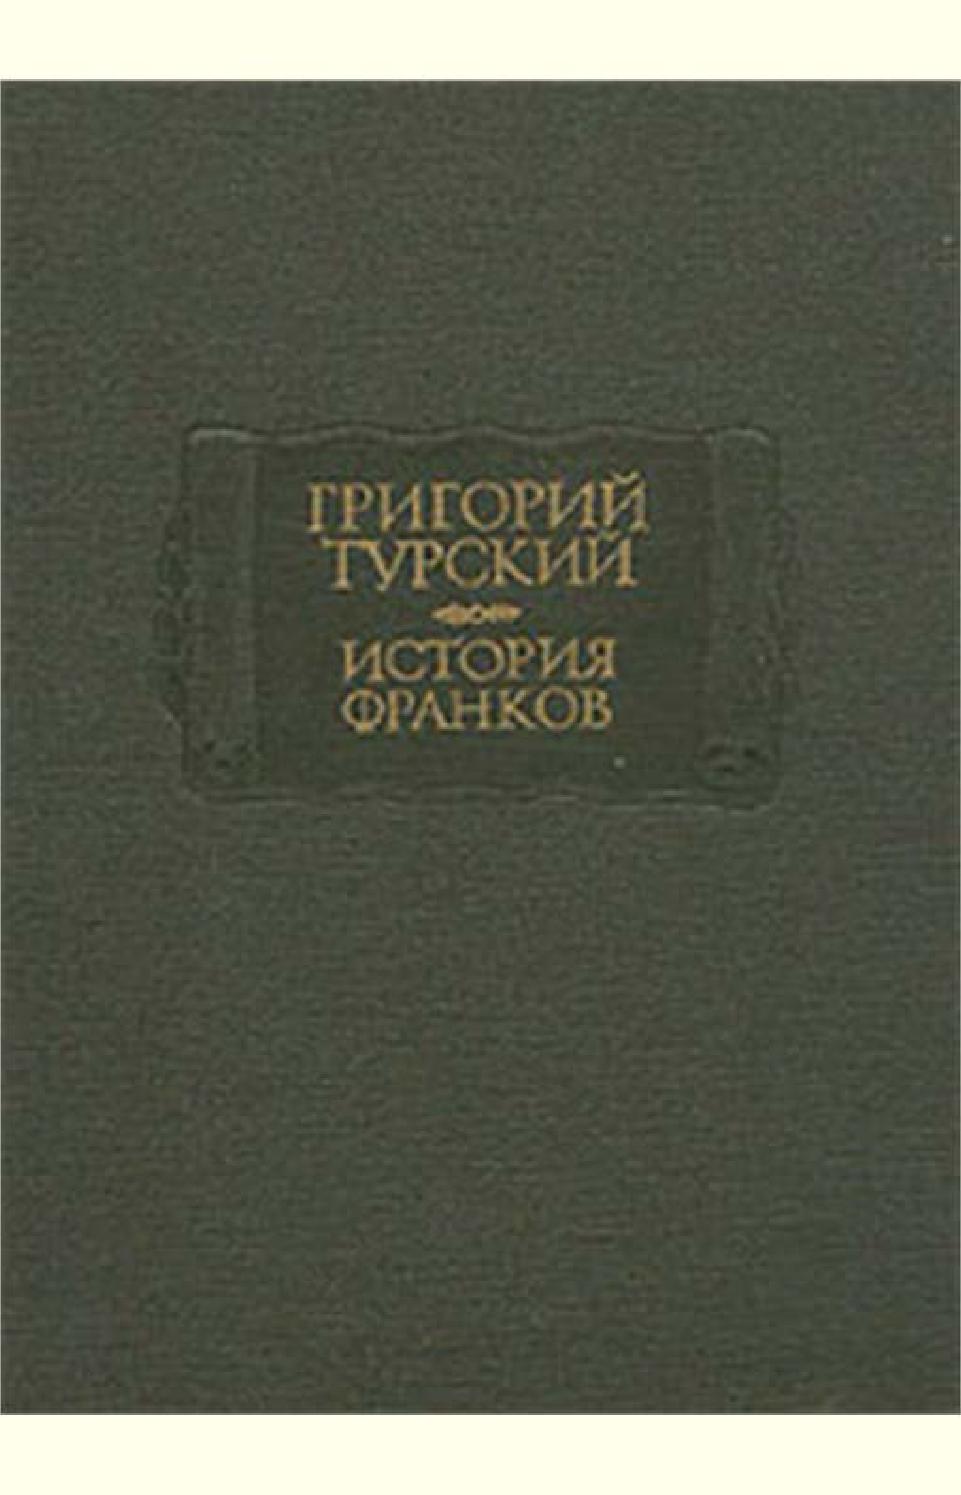 История Франков. Книги 1-5, Григорий Турский